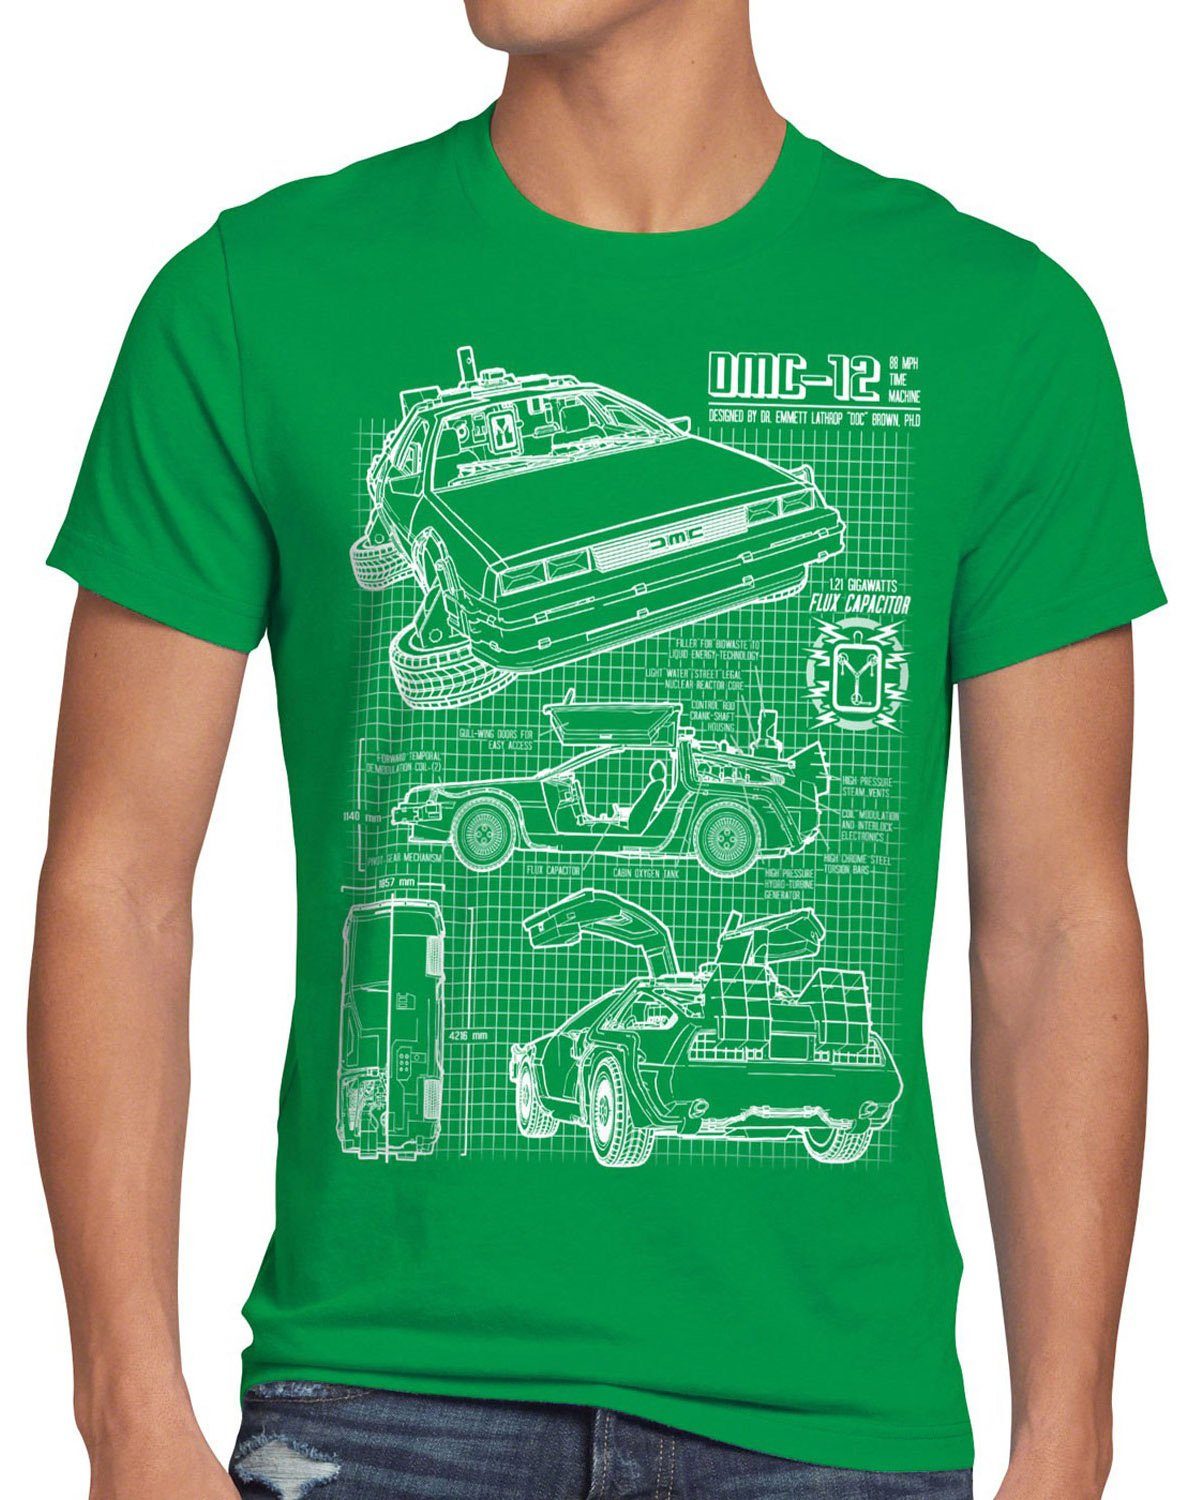 style3 Print-Shirt Herren T-Shirt Delorean DMC-12 zurück zukunft in die to the future back bluray grün